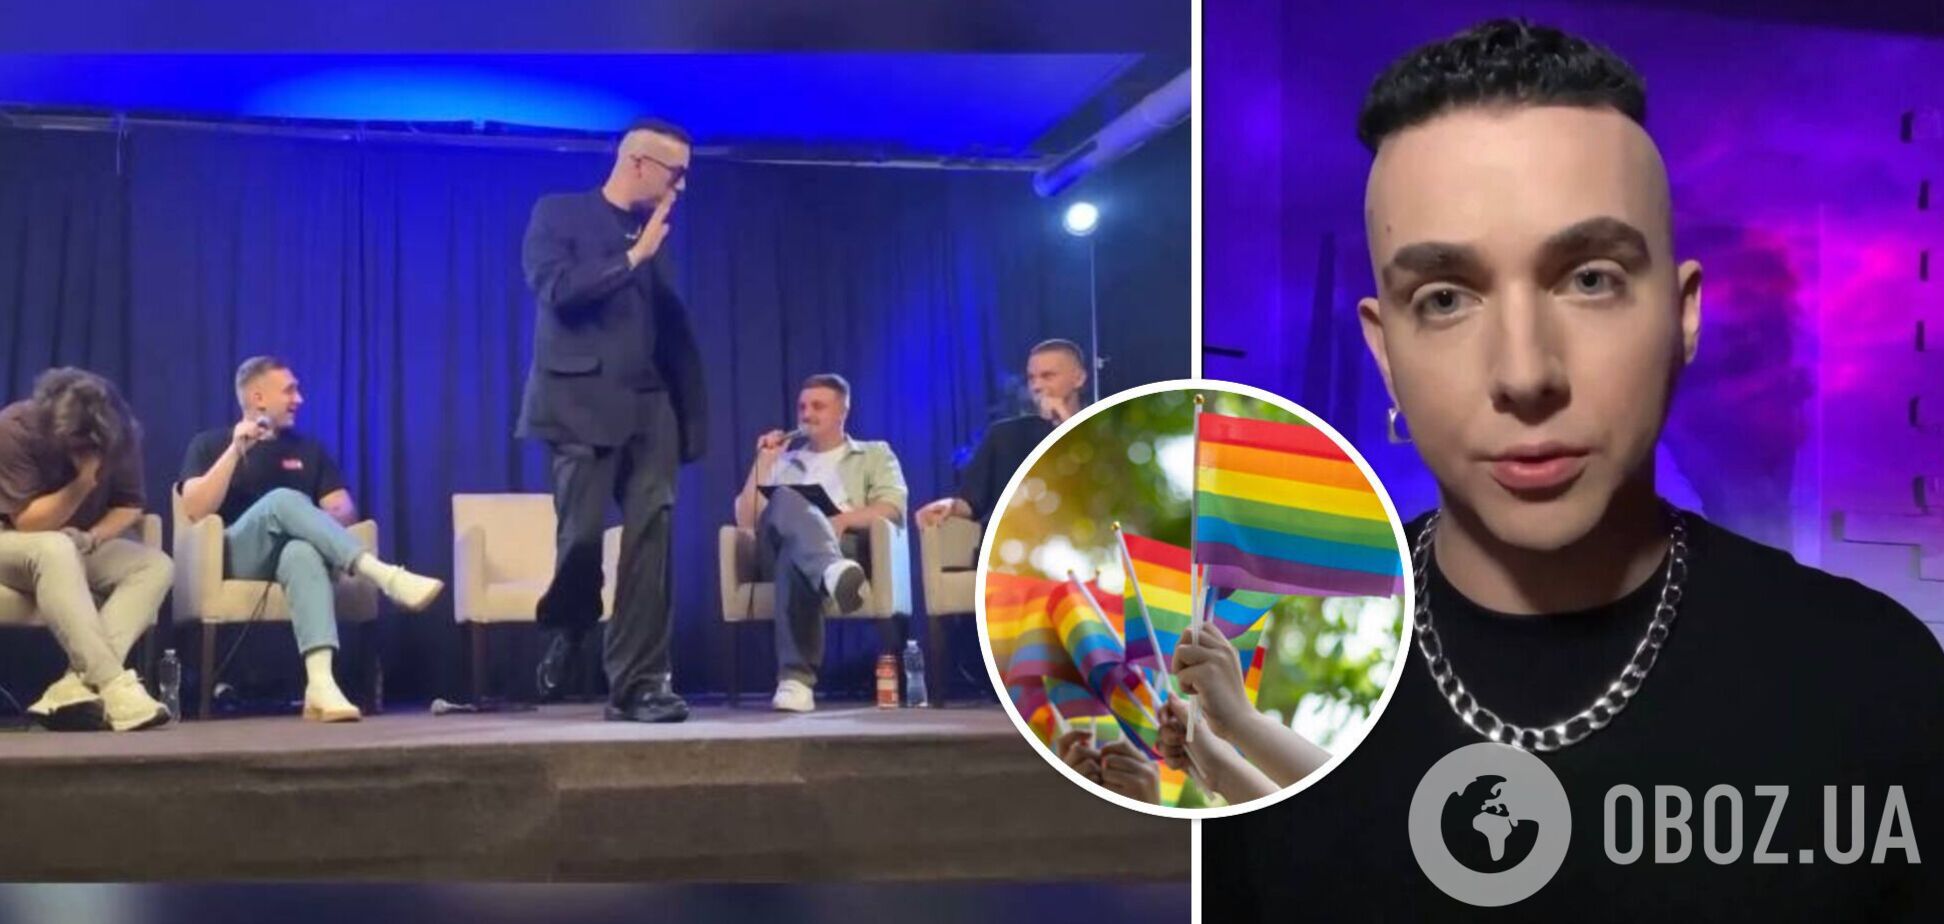 Бросил микрофон и покинул сцену: MELOVIN со скандалом ушел из юмористического шоу из-за наездов на ЛГБТК+